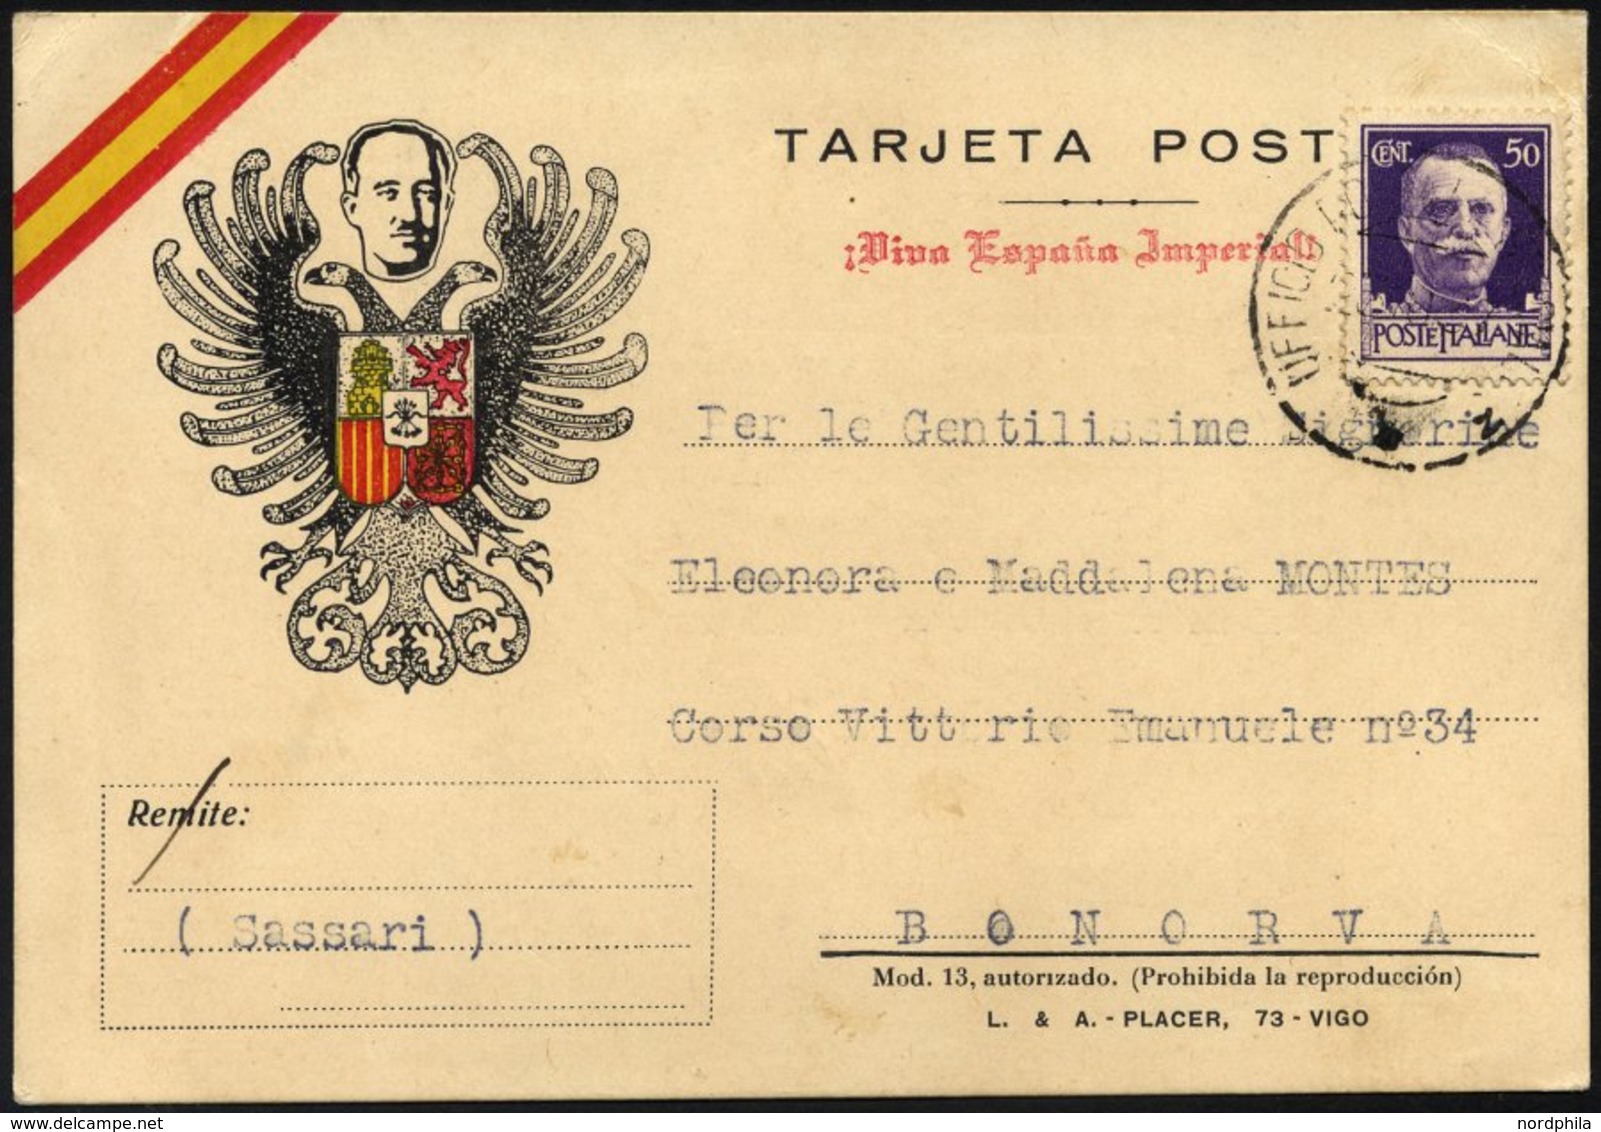 MILITÄRPOST 307 BRIEF, 1937, Propaganda-Feldpostkarte Mit Nicht Notwendiger Gebühr Von 50 C. Hellviolett, Vorderseitig P - Rotes Kreuz